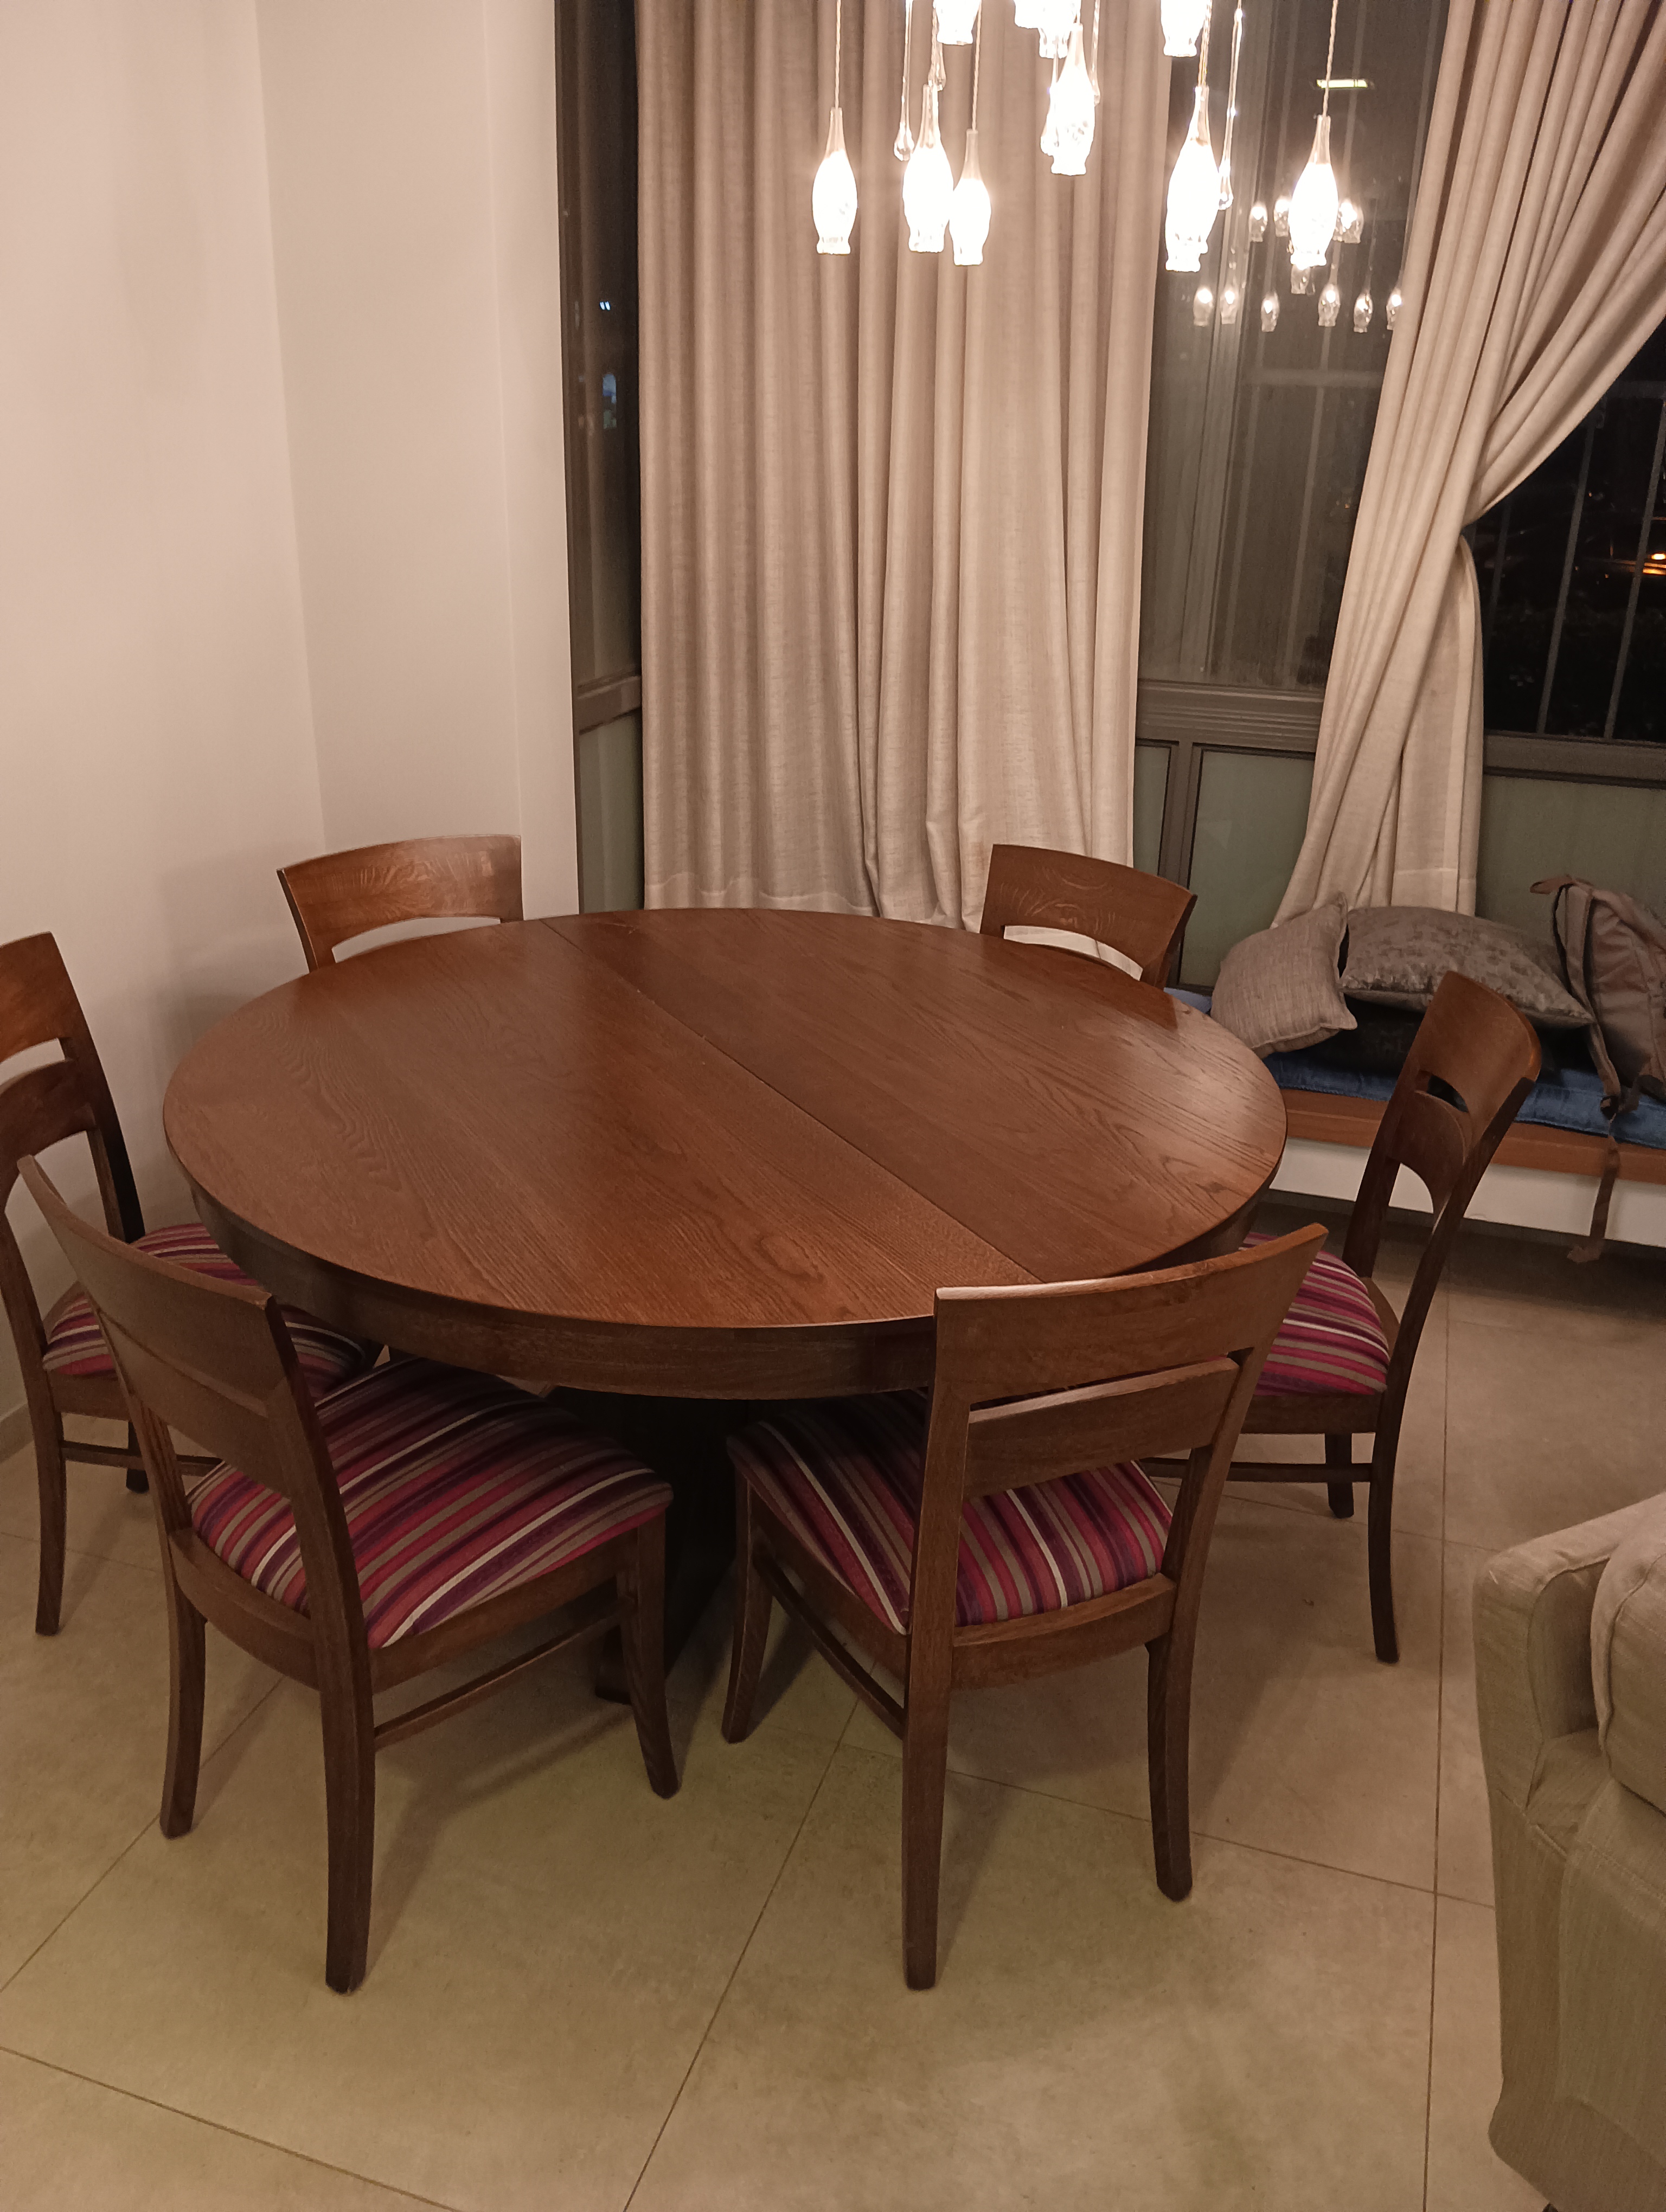 תמונה 3 ,מגוון רהיטים למכירה בתל אביב ריהוט  שונות